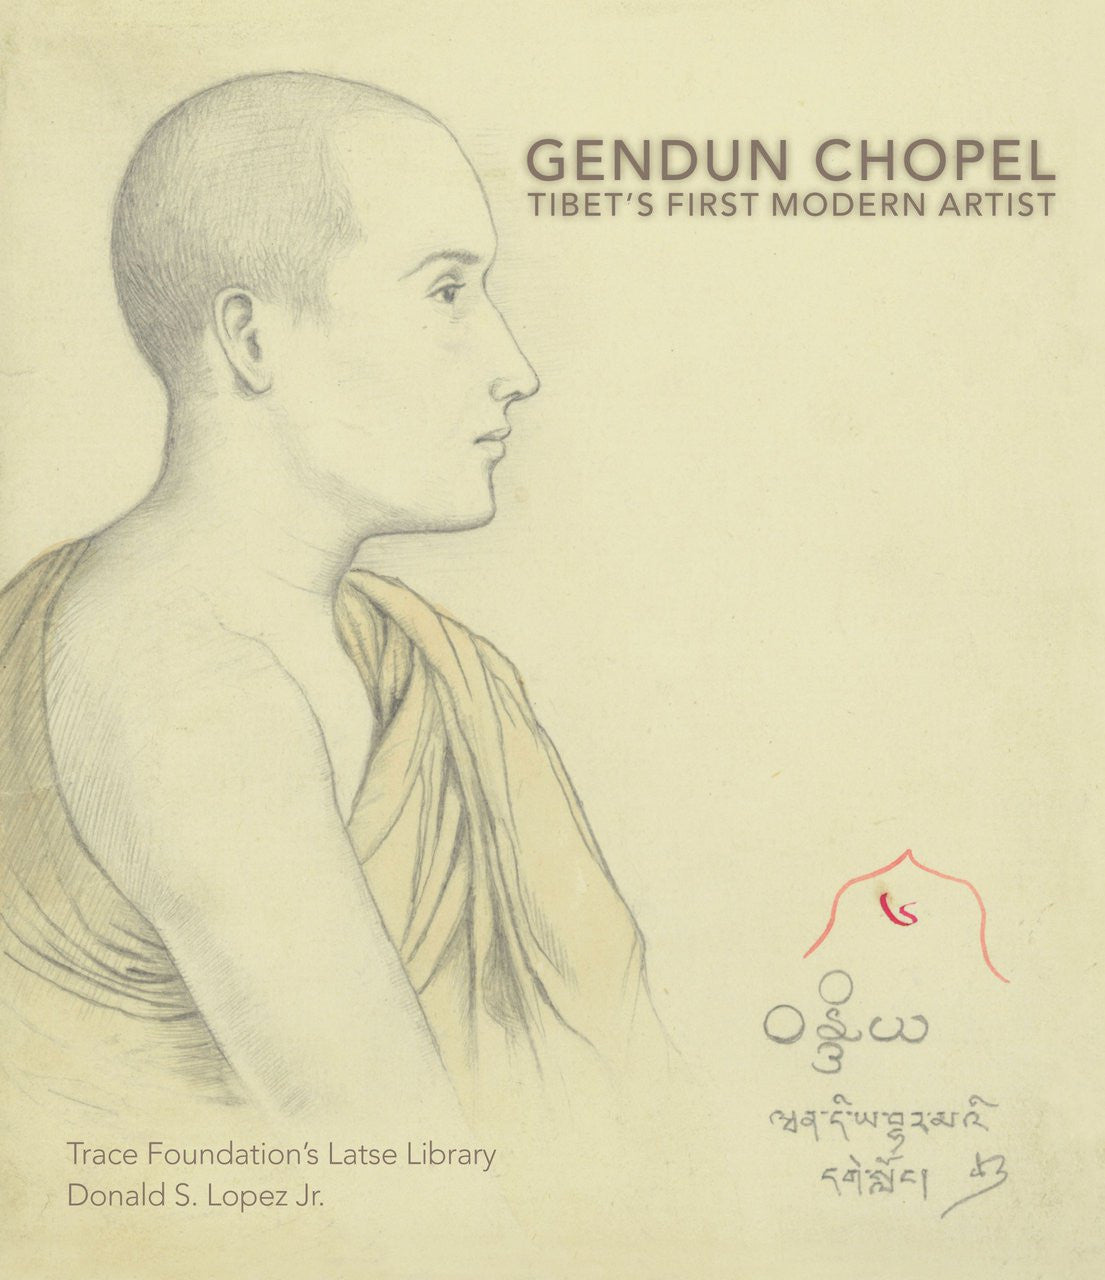 Gendun Chopel: Tibet's First Modern Artist, by Donald S. Lopez